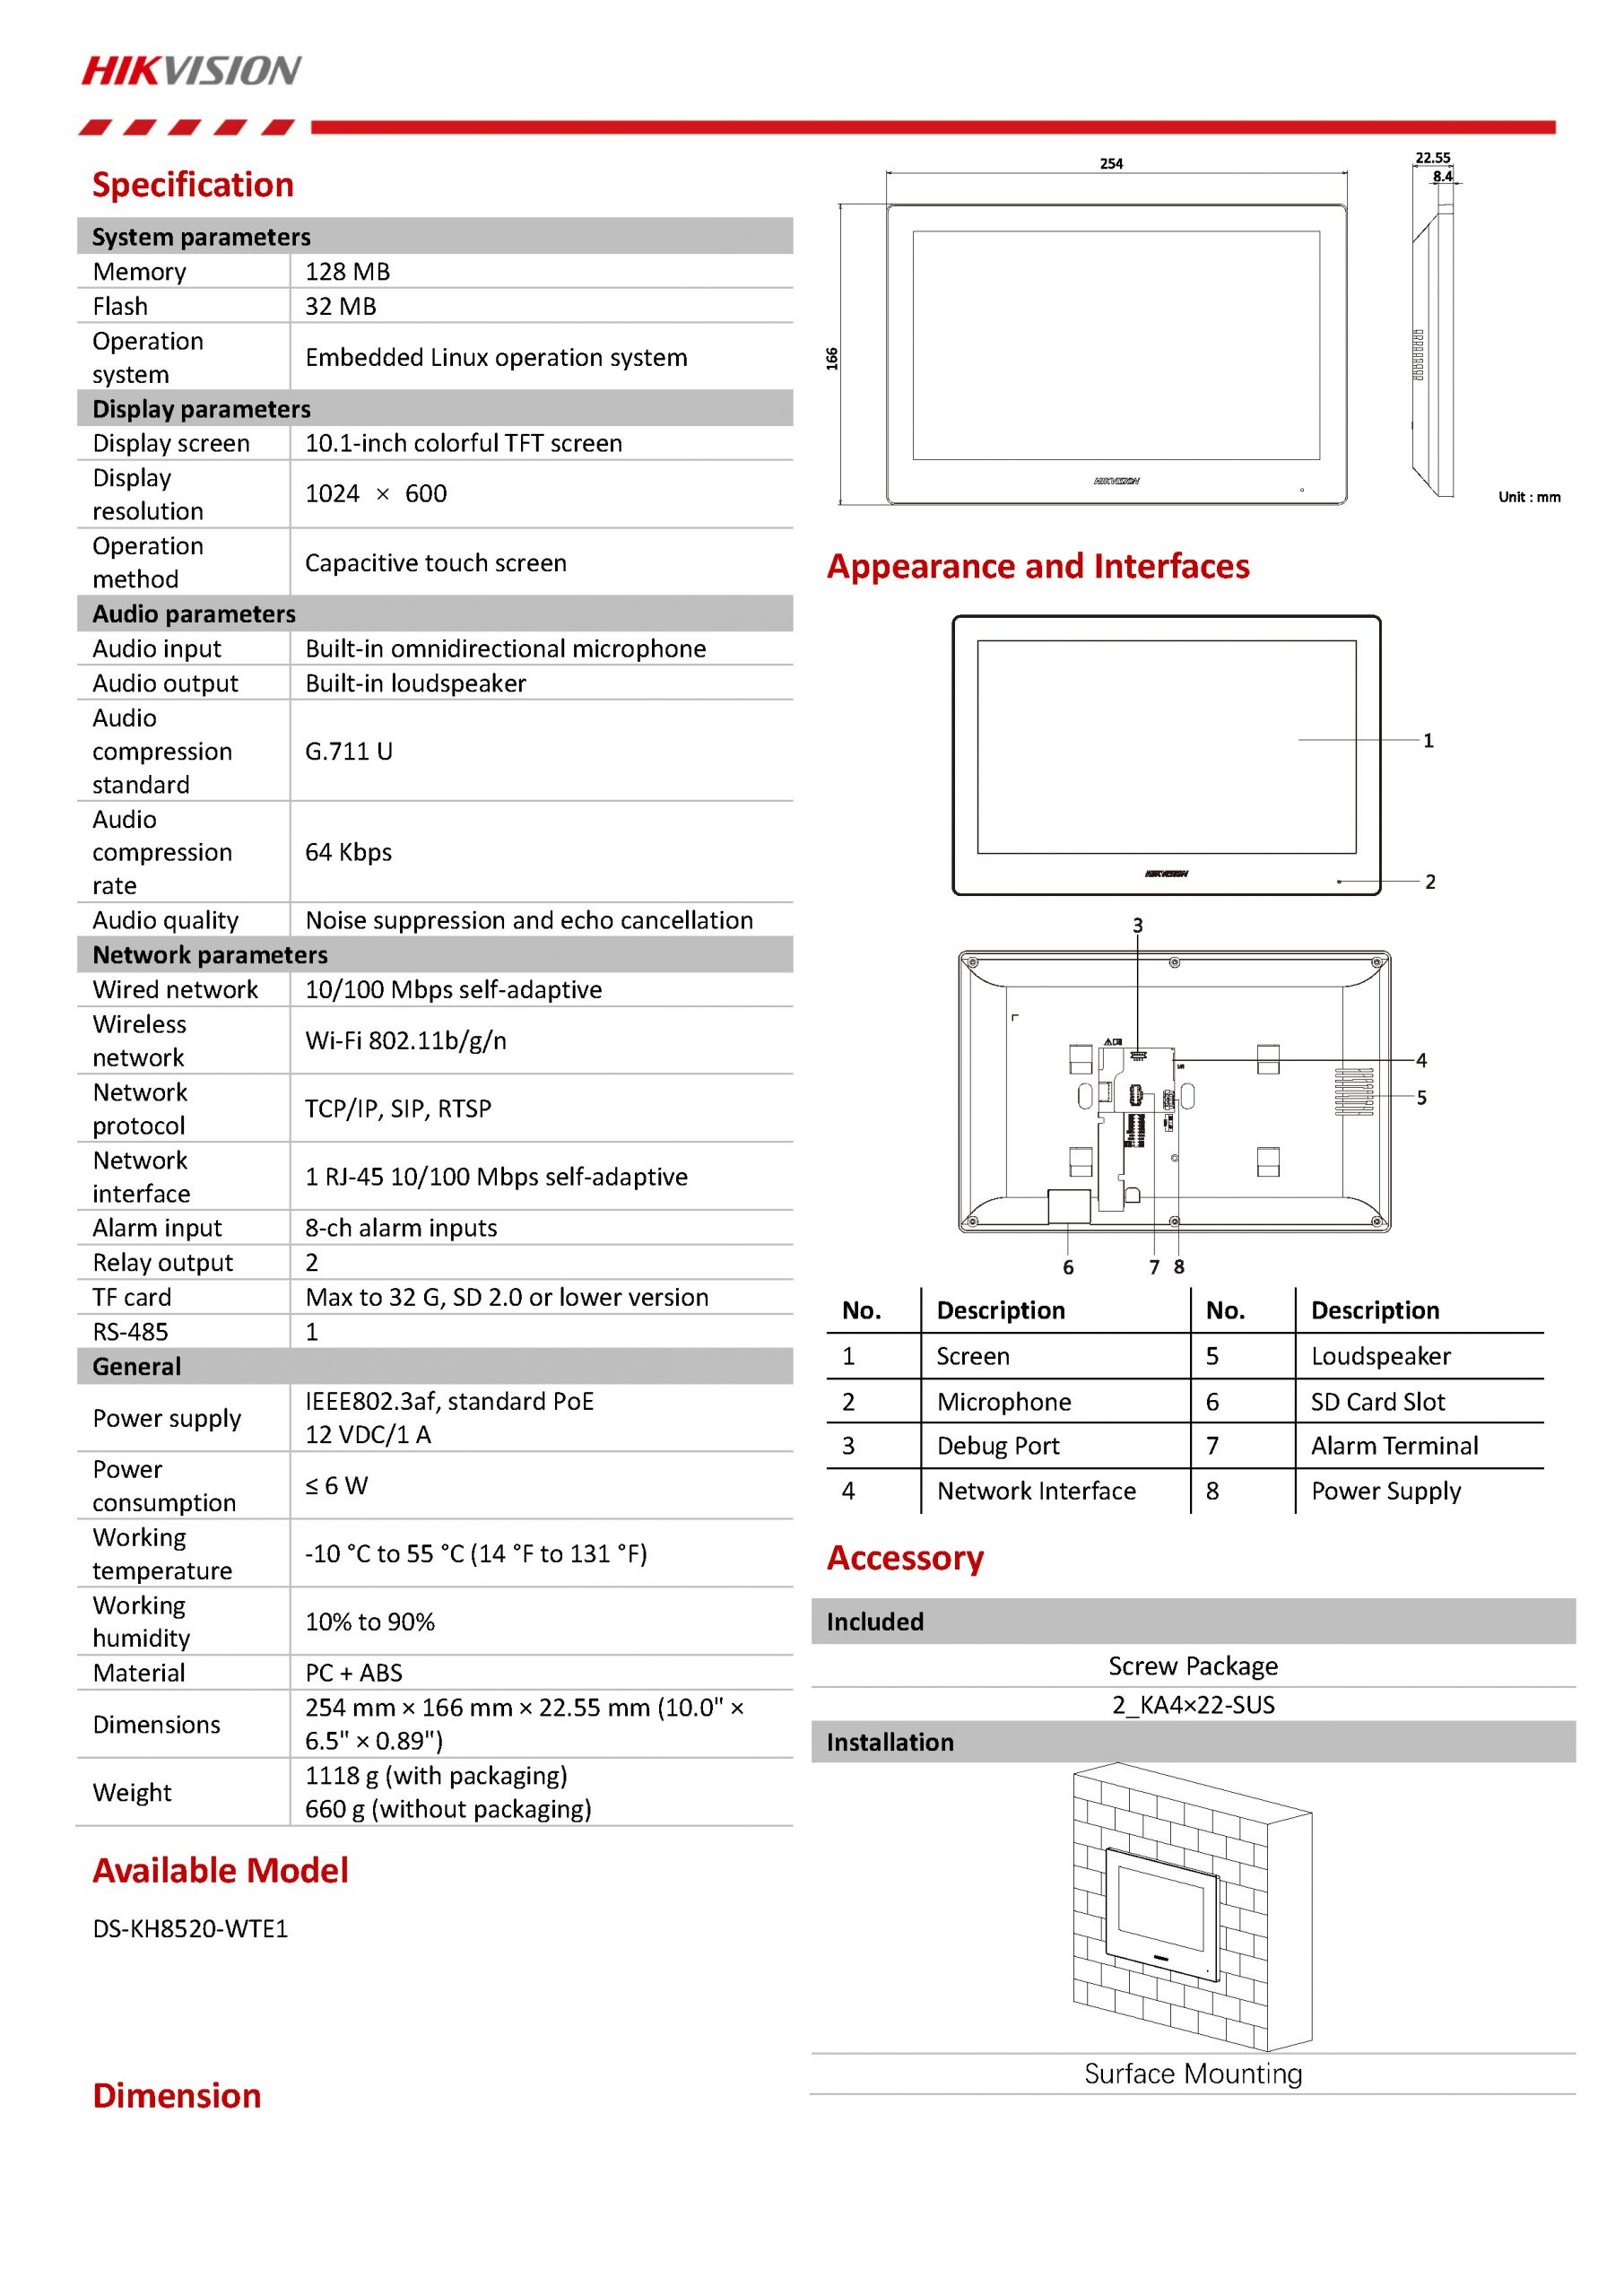 HikVision DS-KH8520-WTE1 Spec